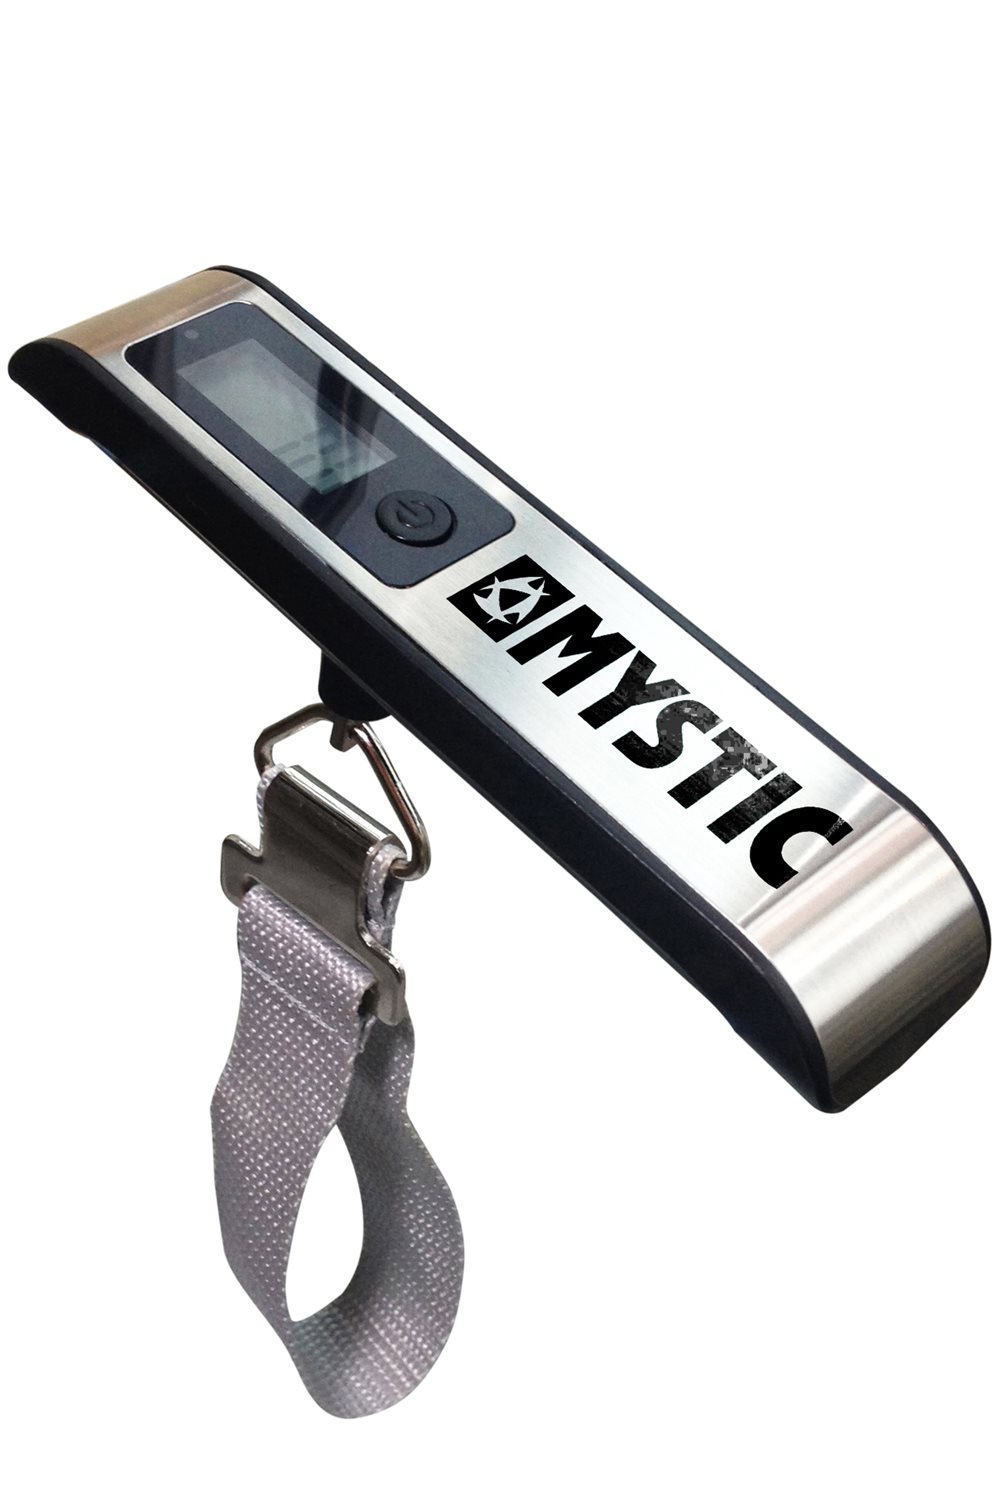 staal microfoon verlies uzelf Luggage Scale weegschaal van Mystic kopen? ▷ Kitemana.nl